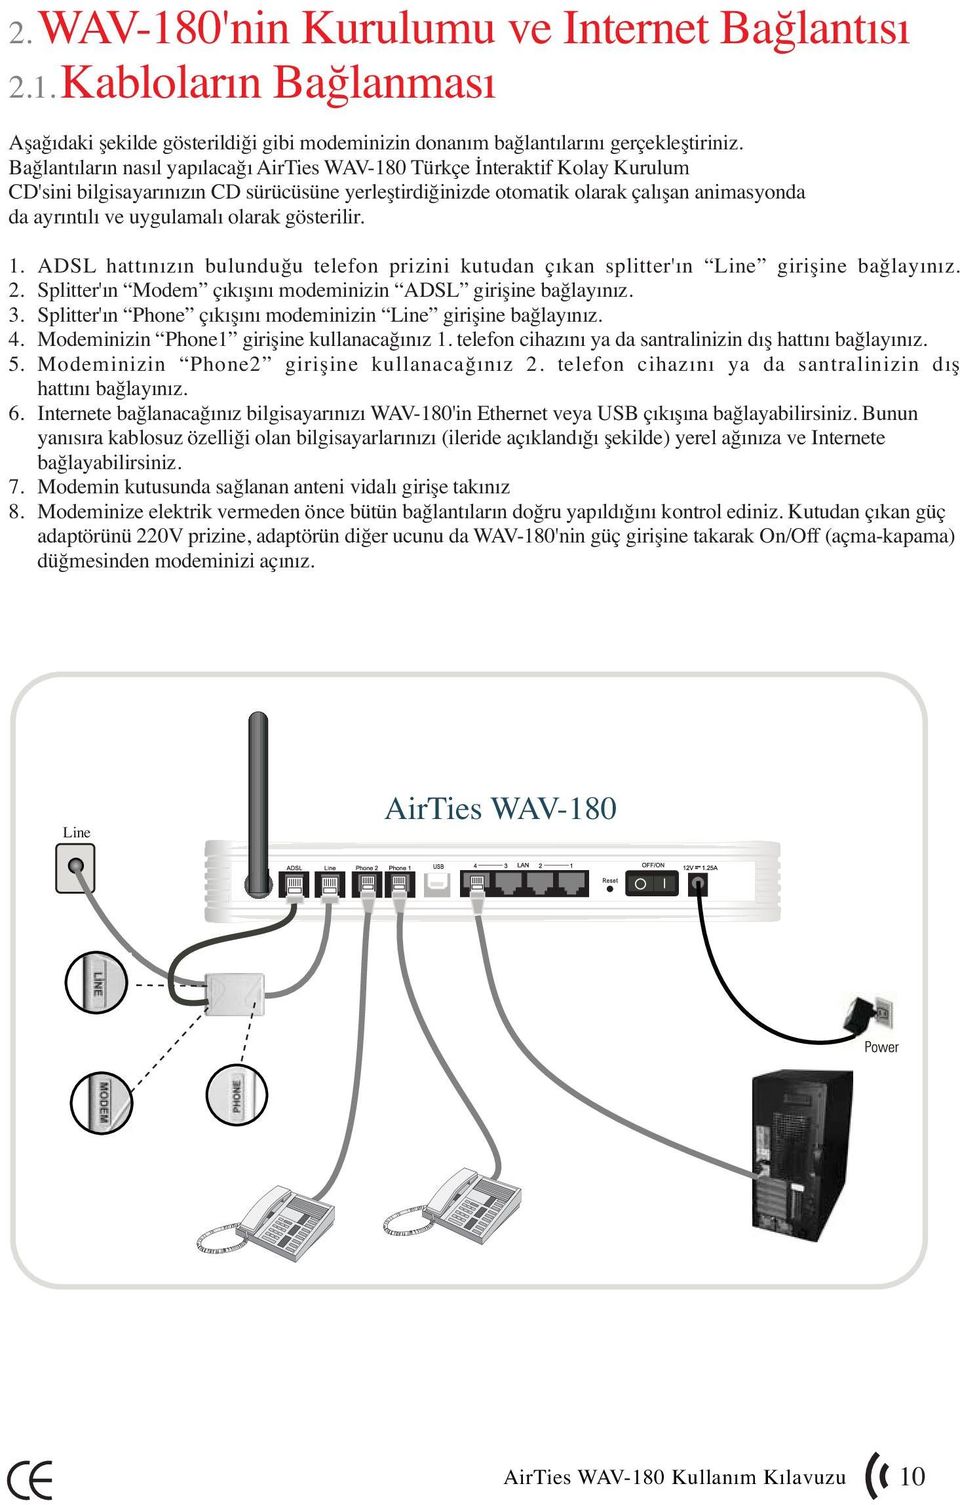 olarak gösterilir. 1. ADSL hattınızın bulunduğu telefon prizini kutudan çıkan splitter'ın Line girişine bağlayınız. 2. Splitter'ın Modem çıkışını modeminizin ADSL girişine bağlayınız. 3.